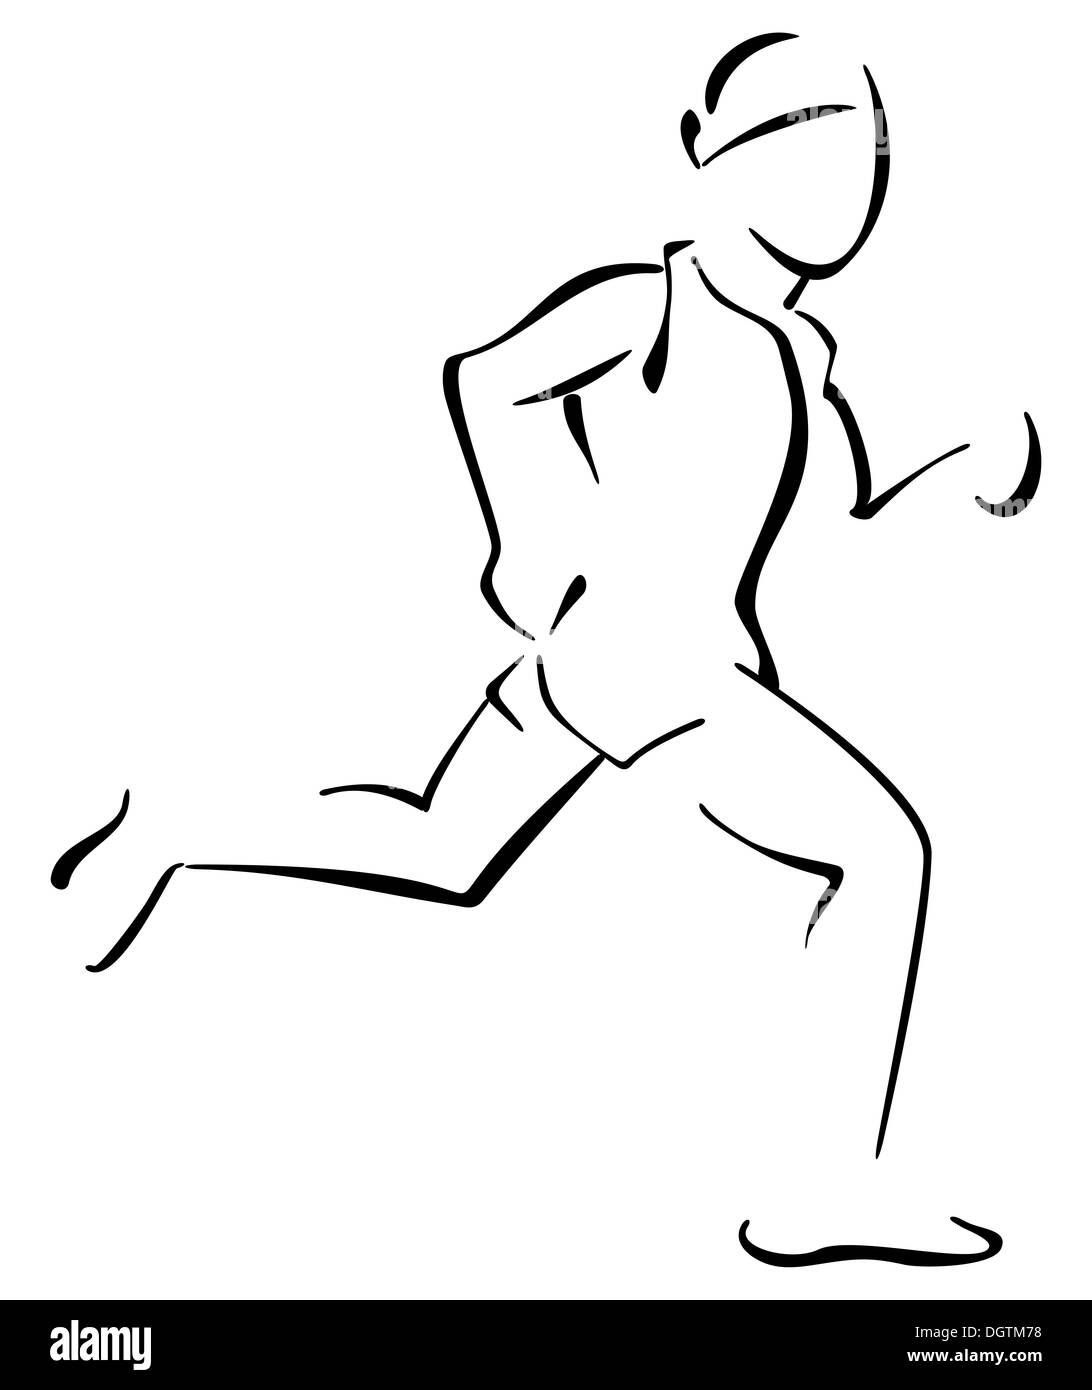 Графическое изображение бегущего человека